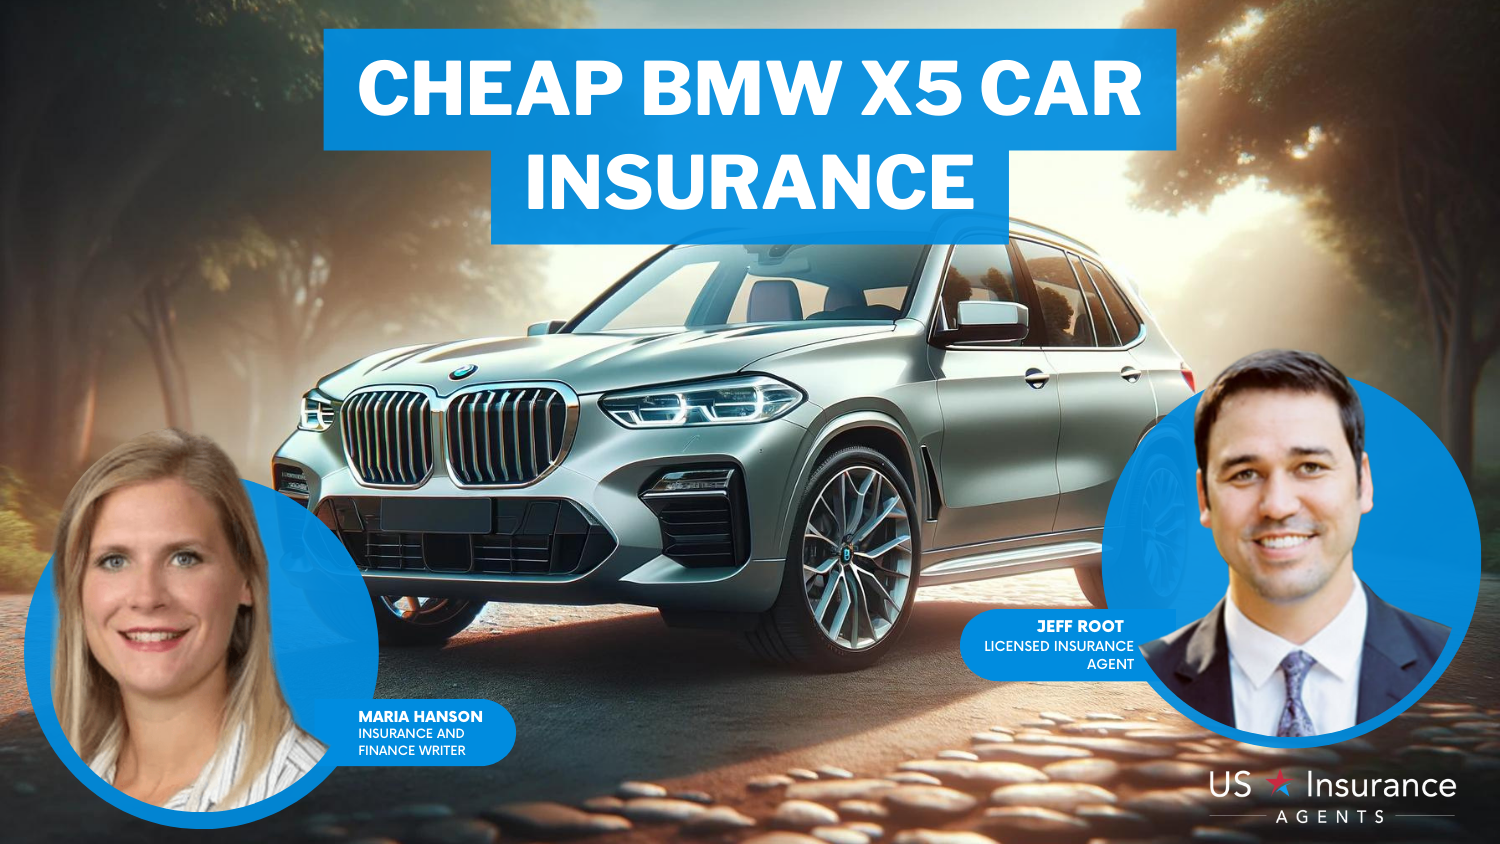 Erie, Chubb, Travelers: Cheap BMW X5 Car Insurance